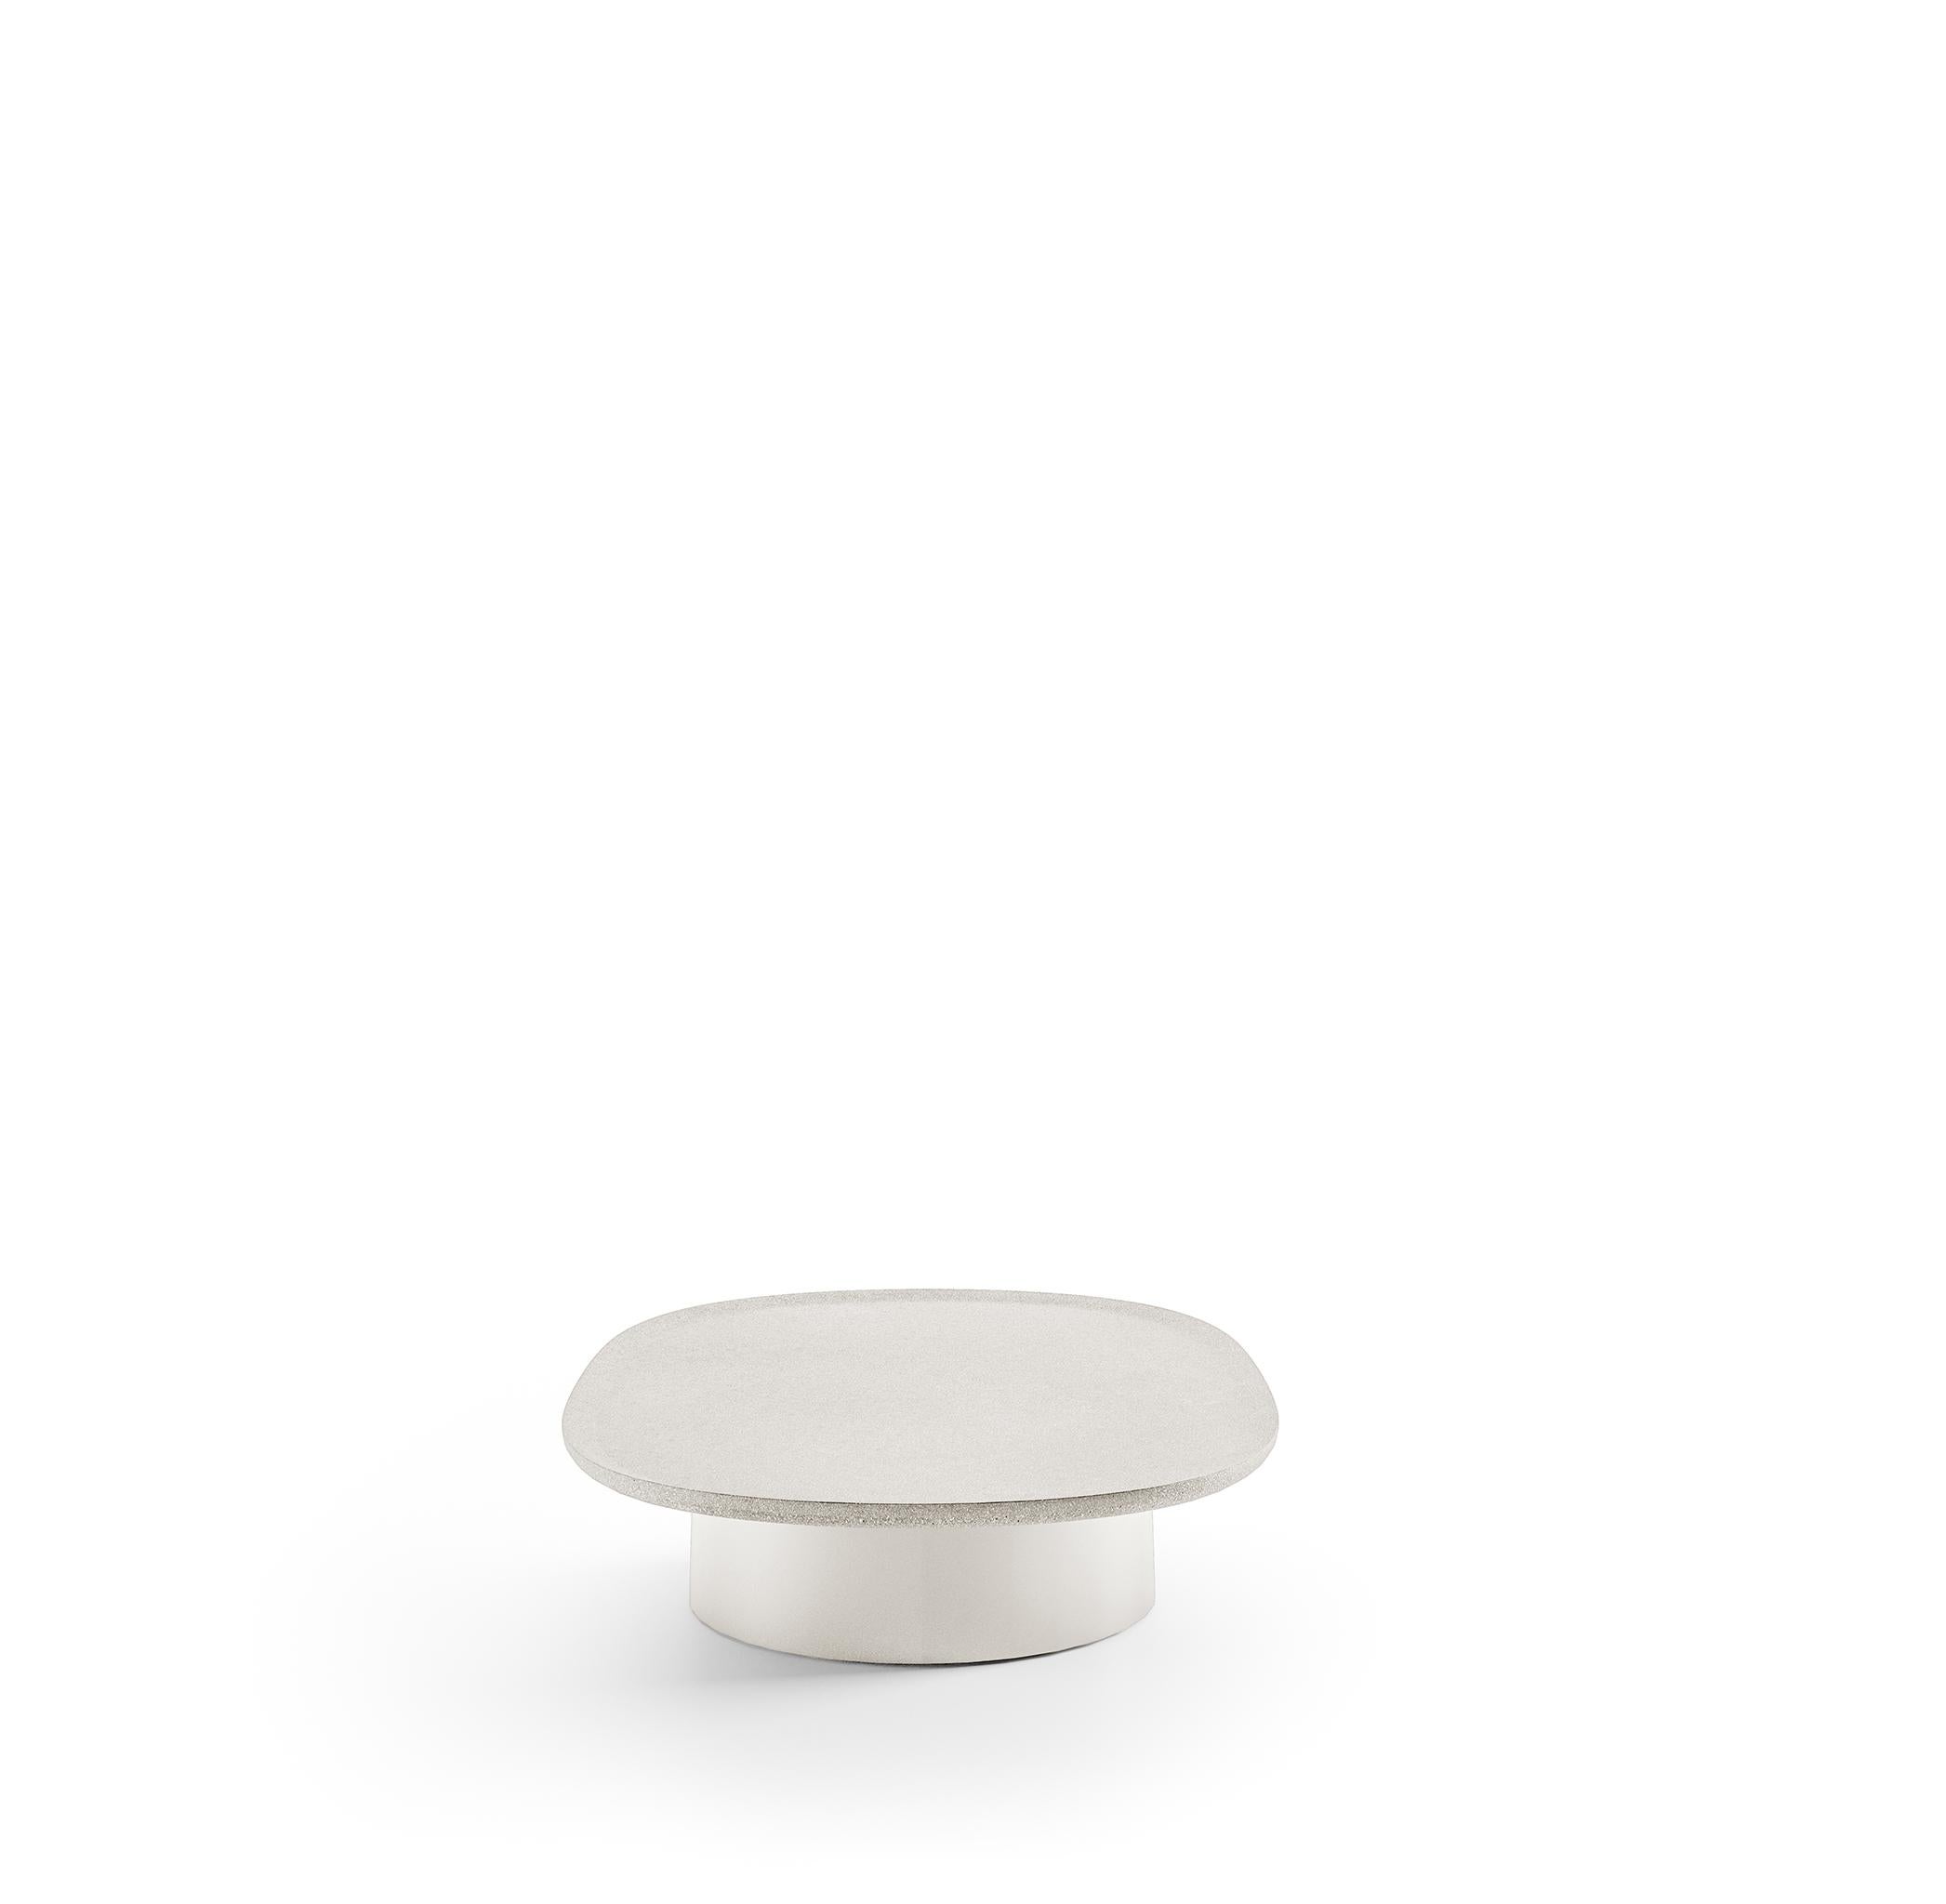 Table ovale Louisa 3 de Vincent Van Duysen en ciment blanc. 
Fabrication artisanale en Italie exclusivement par C.I.C.. 

La collection Louisa de Vincent Van Duysen propose des tables basses irrésistiblement tactiles. Cette version ovale est idéale